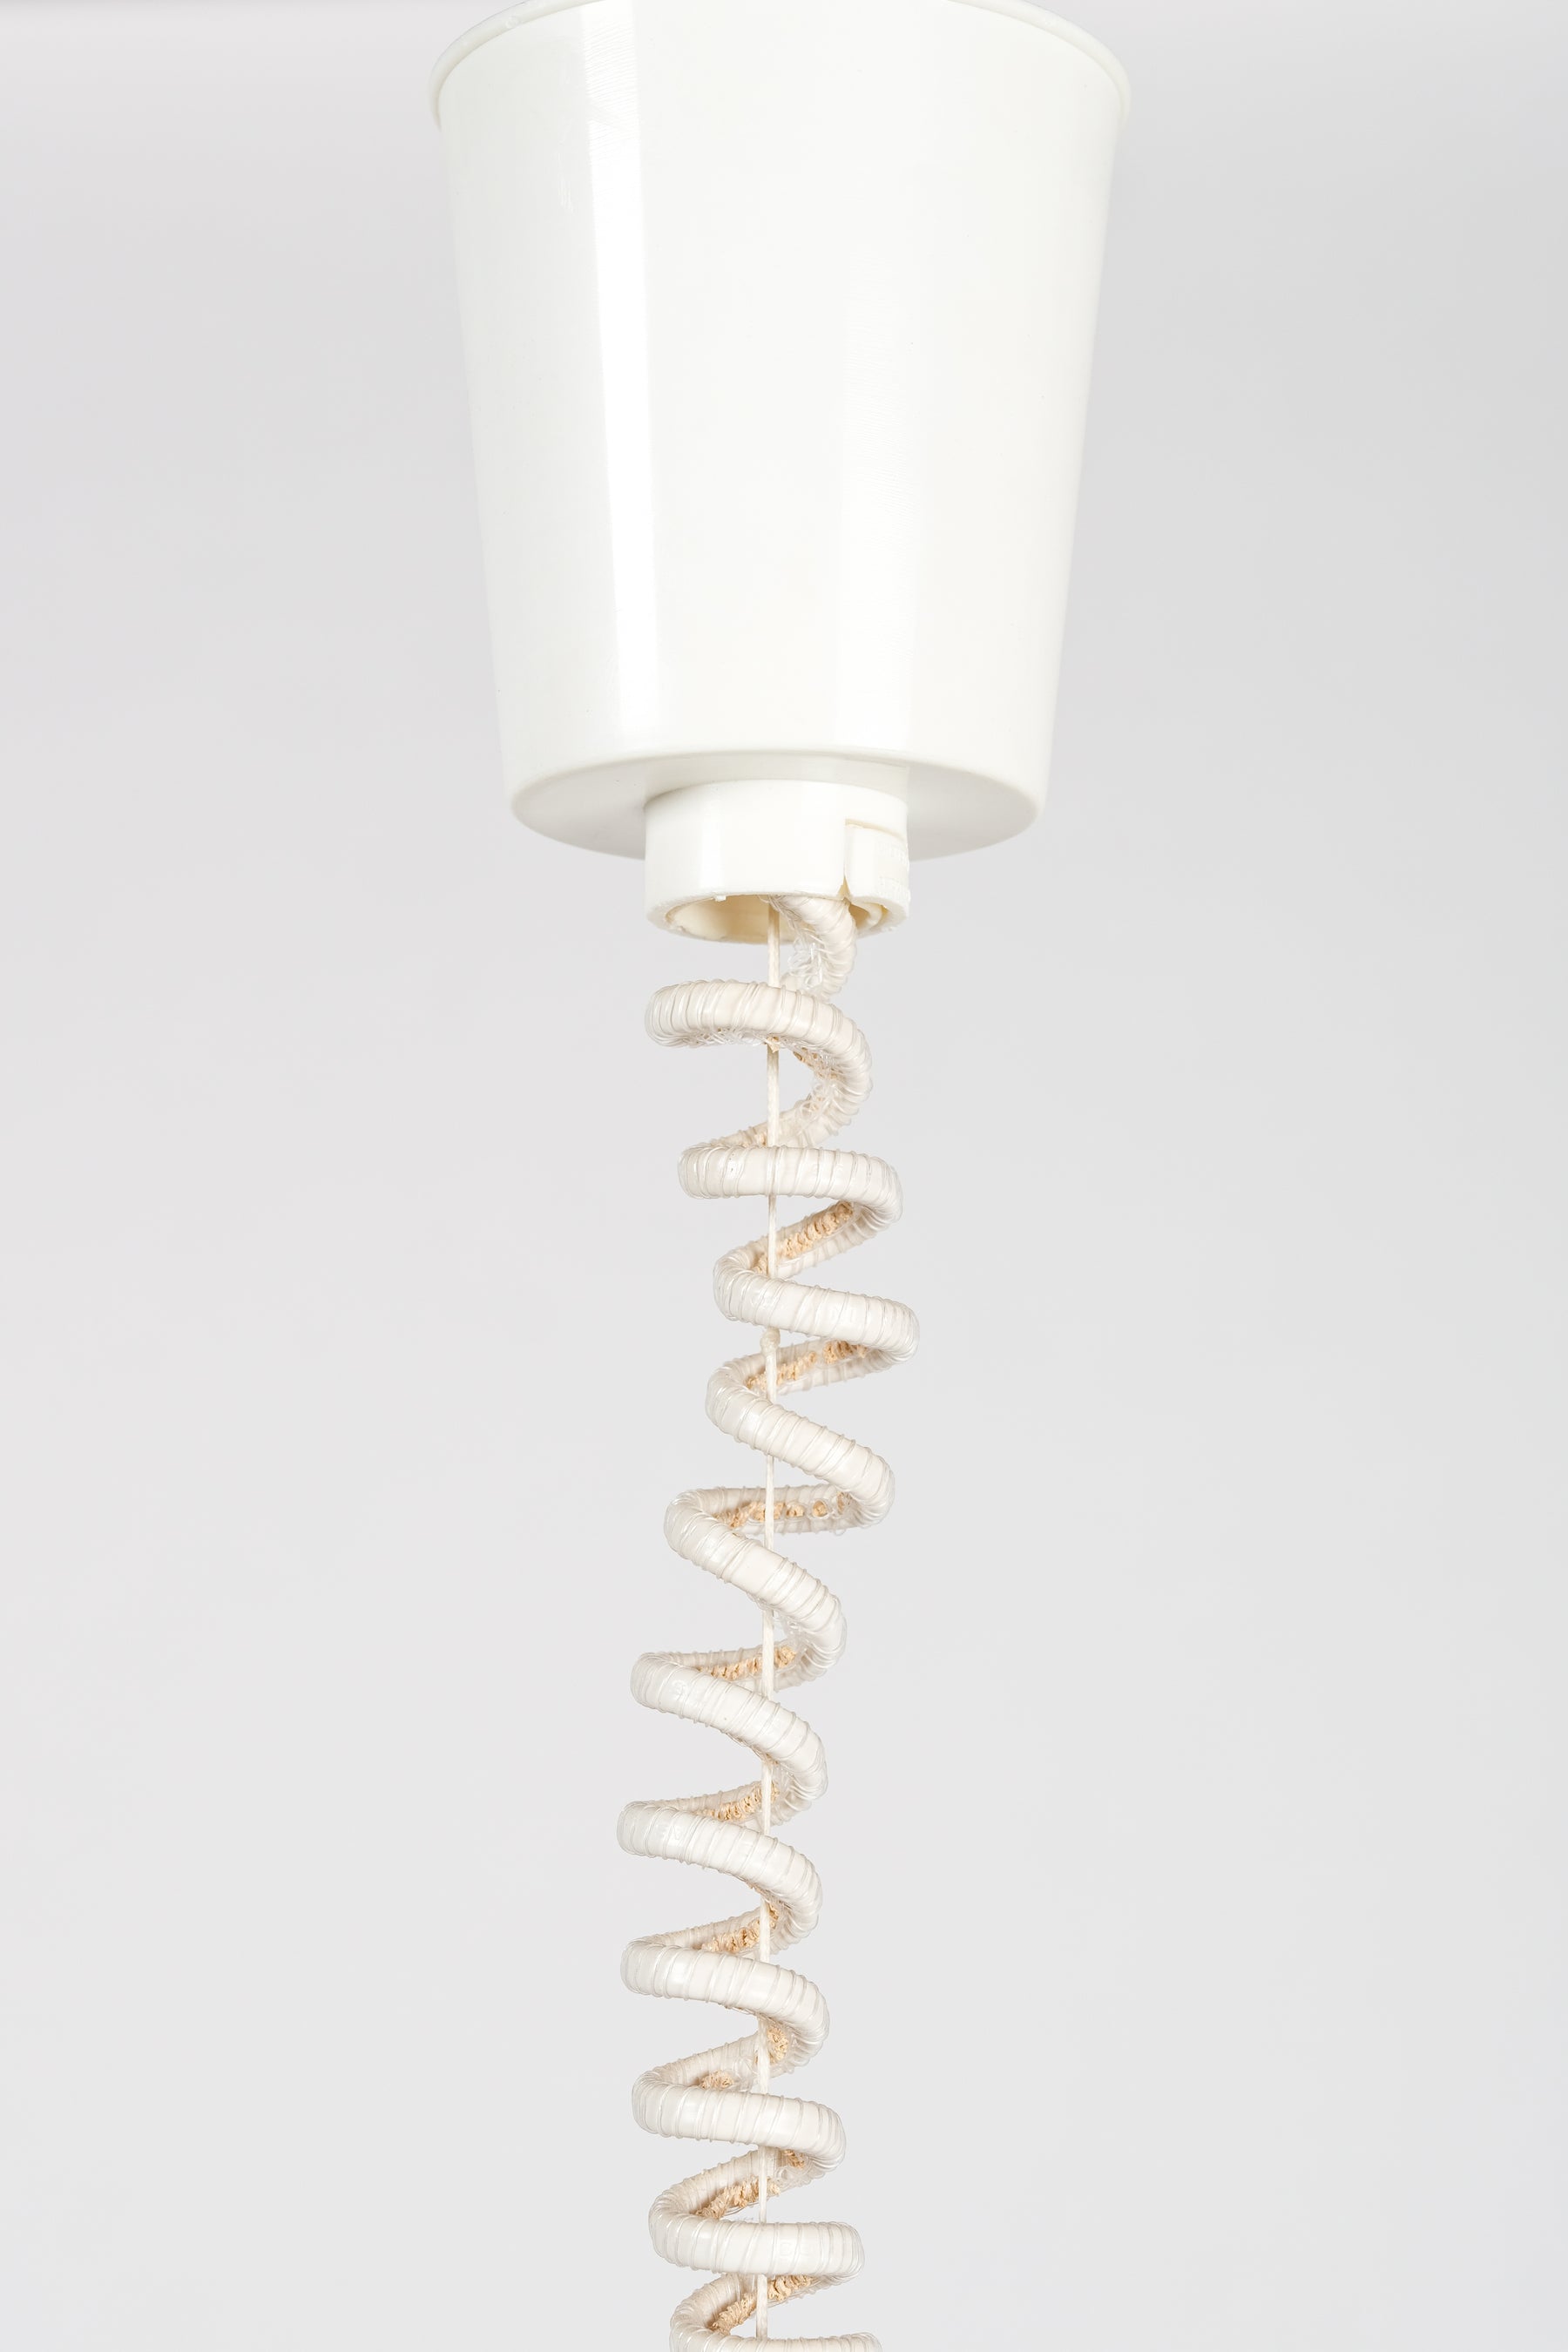 Ceiling Lamp, Model N52503, Form Light, Denmark, 80s